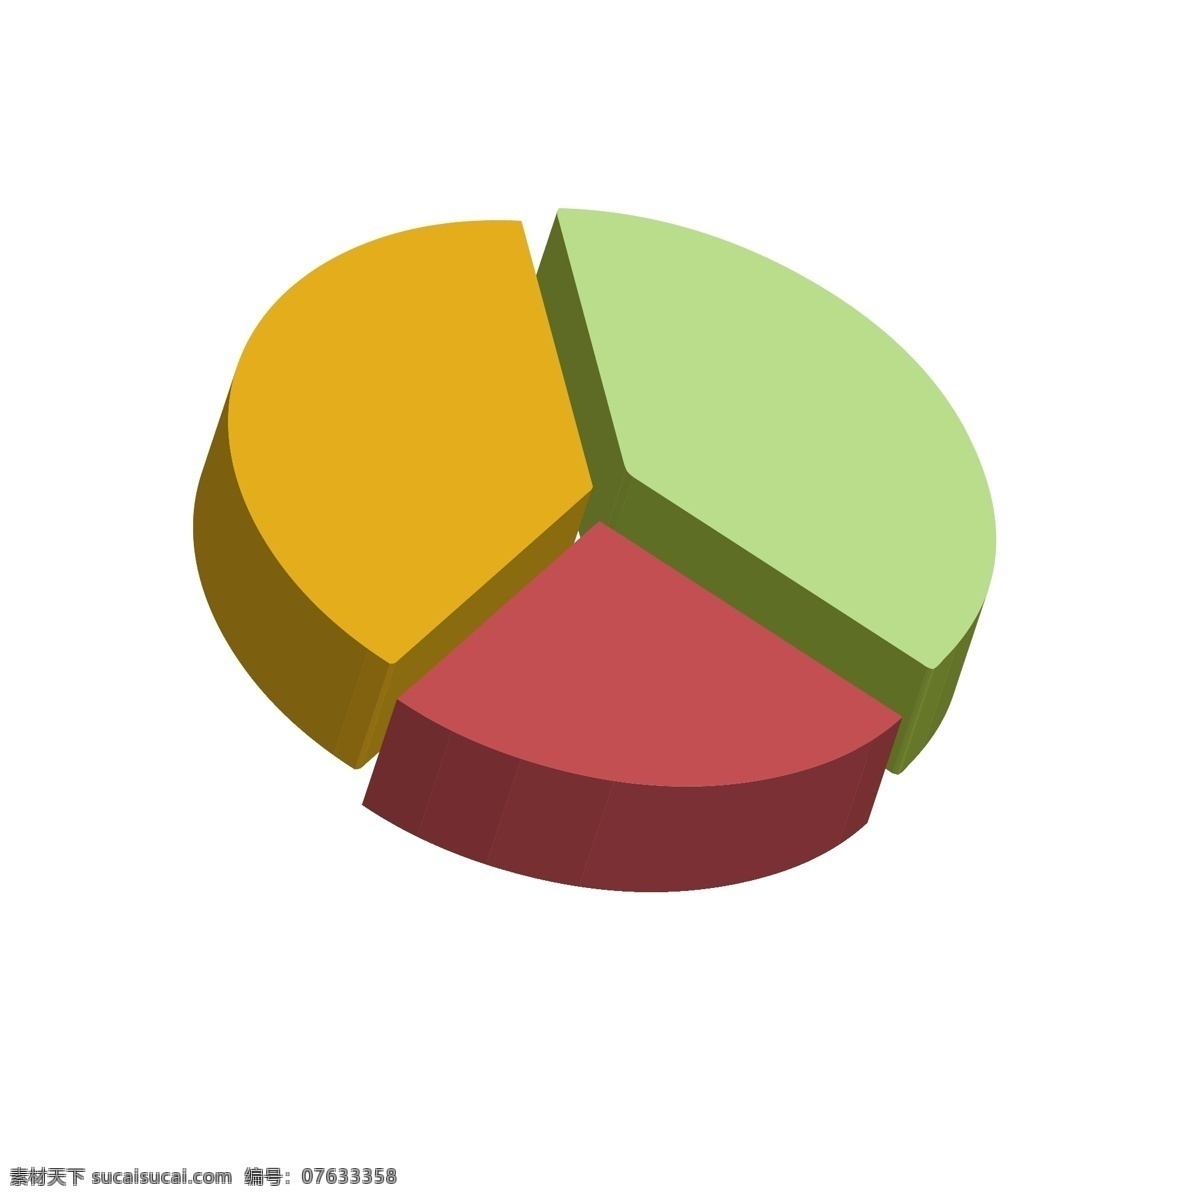 商务 矢量 数据 立体 饼 图 饼图 数据分析 ppt图表 彩色信息图表 商务图表 饼图ppt 柱图 环形图表 科技